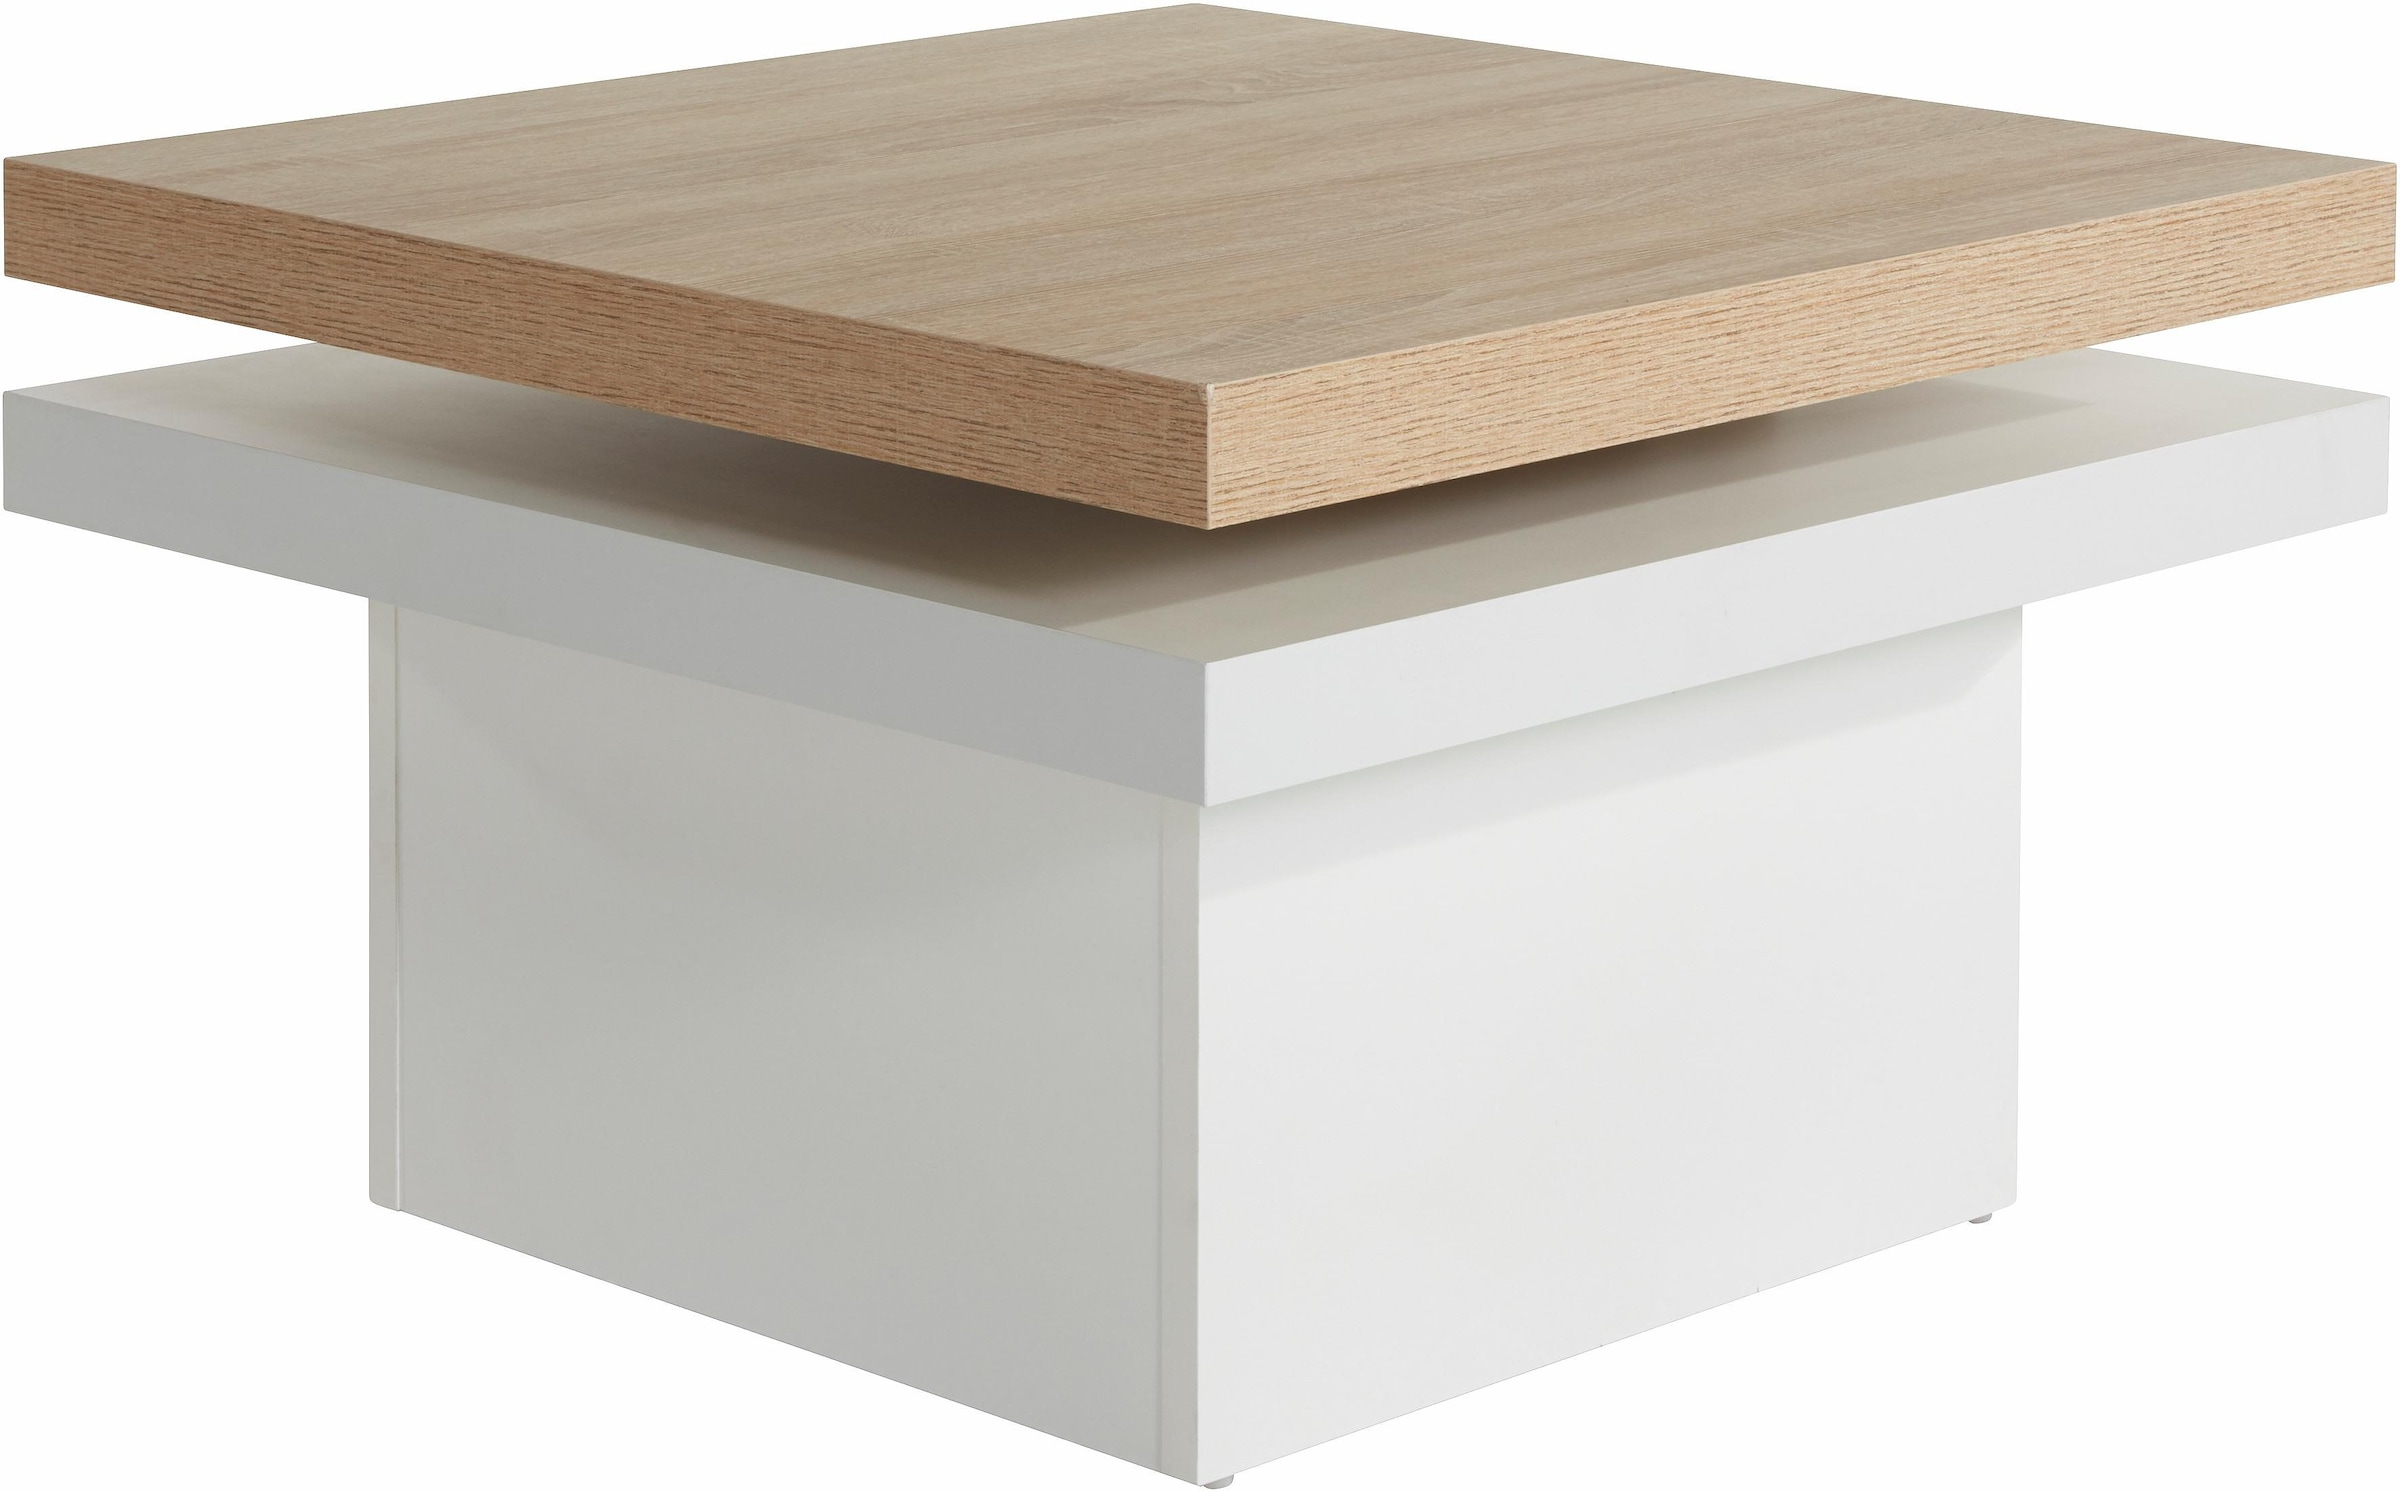 1 aus Couchtisch, 2 PRO Line mit Funktion, Tischplatten, Rechnung Tischplatte kaufen auf drehbar Holz,